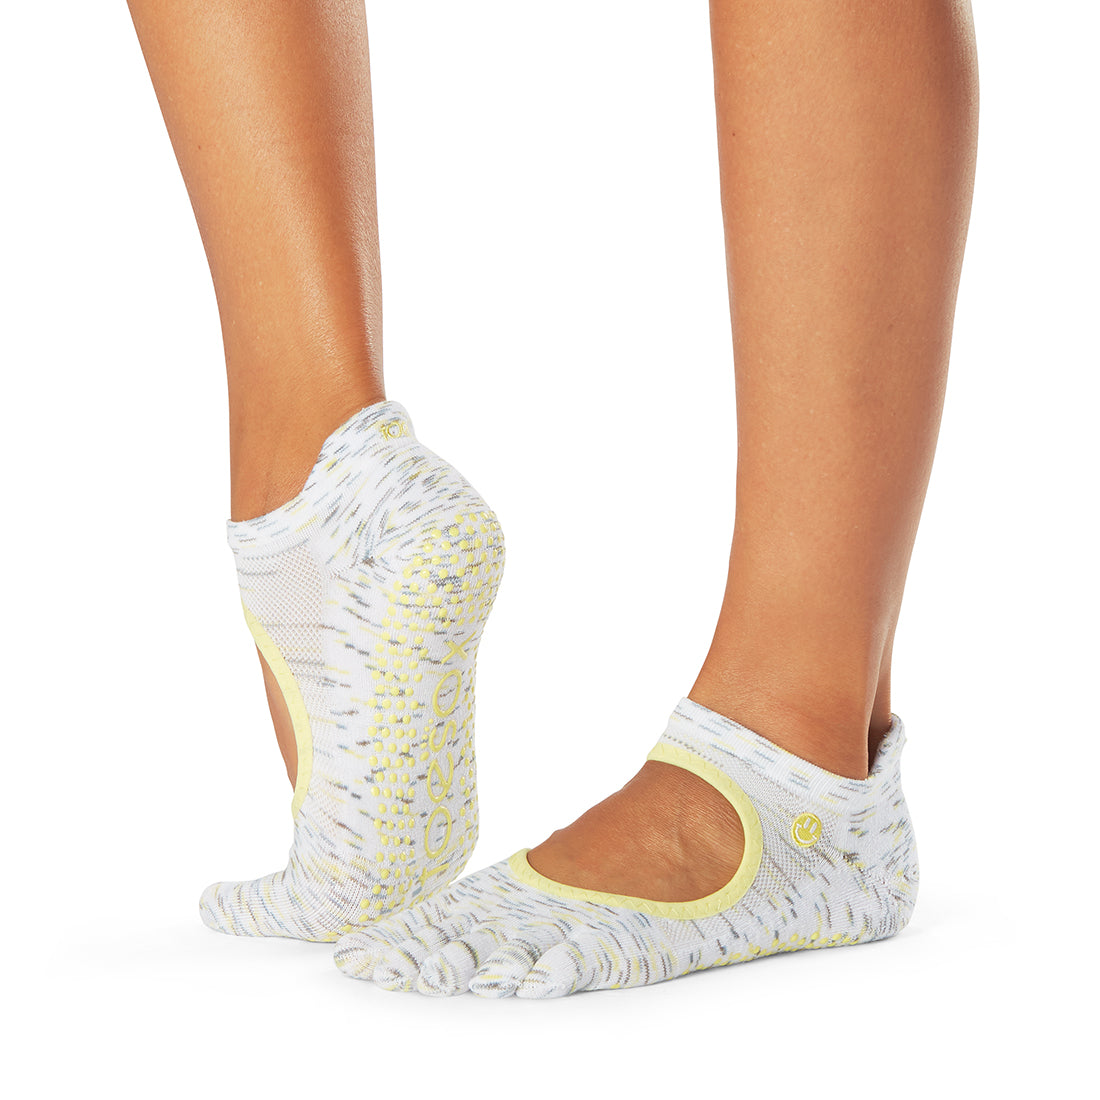 Chloe River Grip Sock - BELE Fit